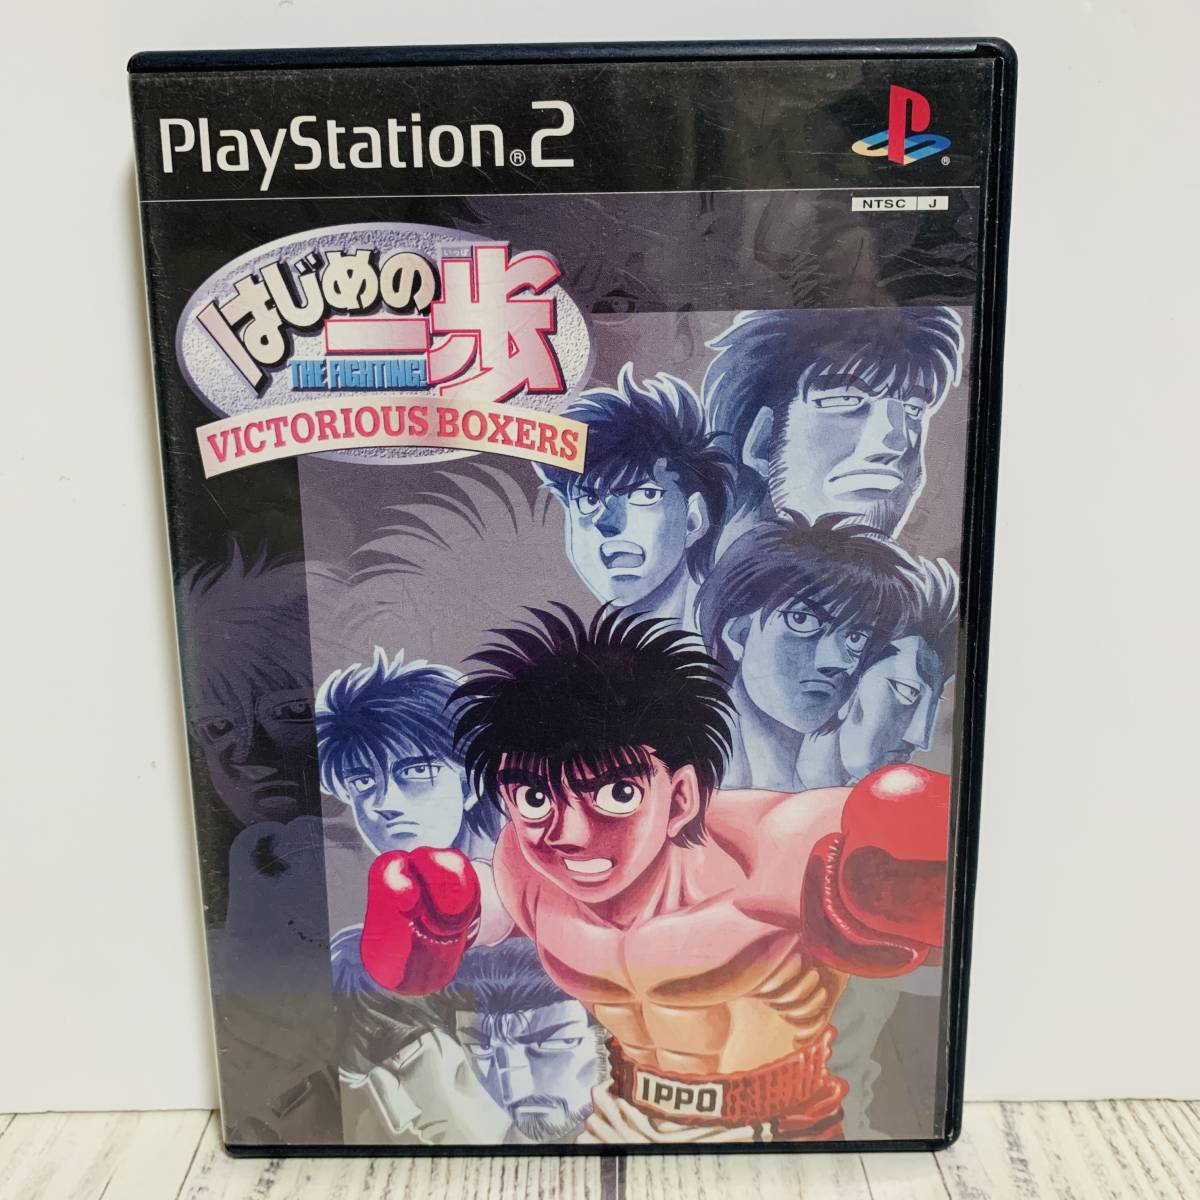 PlayStation2 PS2 - Hajime no Ippo VICTRIOUS BOXERS развлечения программное обеспечение pa желтохвост sing retro игра ( б/у игра soft )